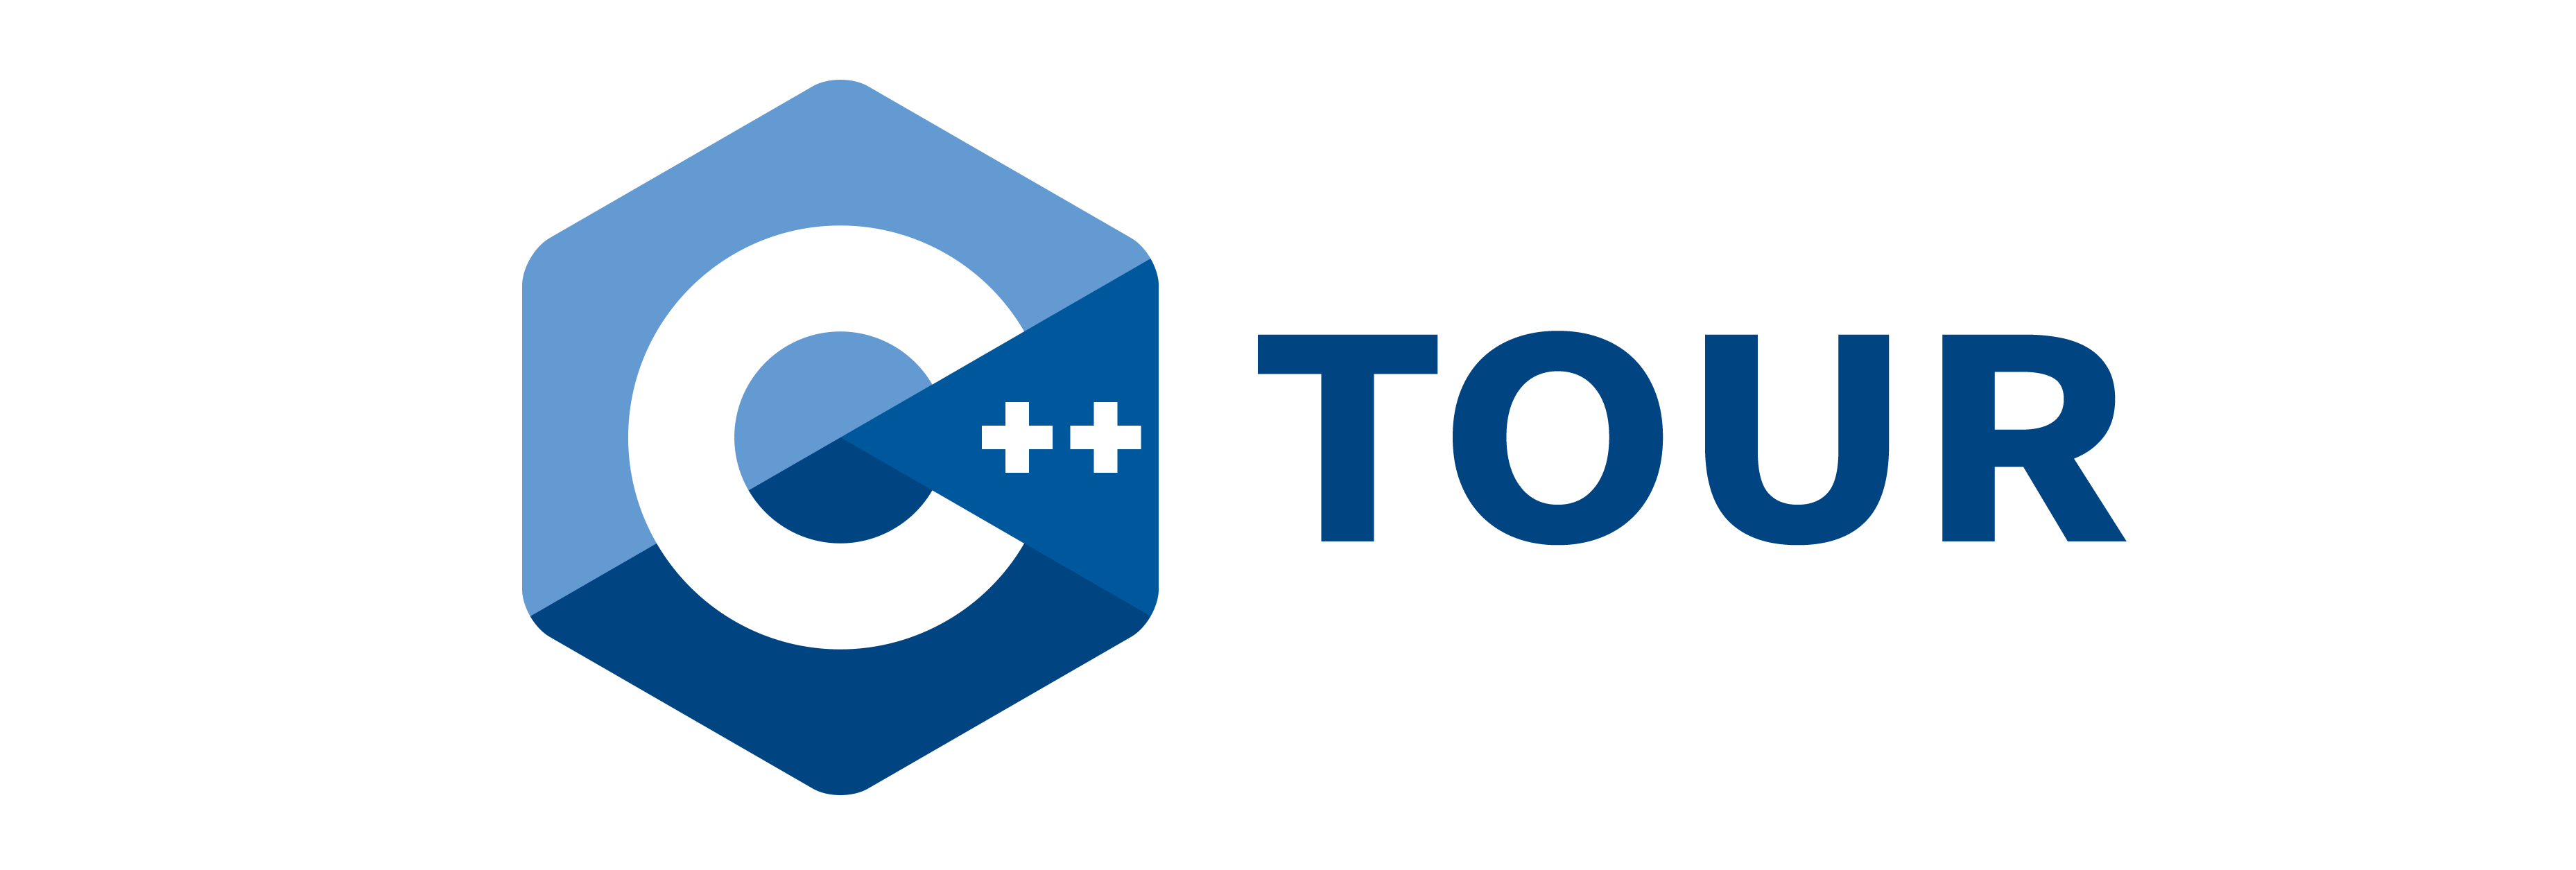 C++ Tour Logo